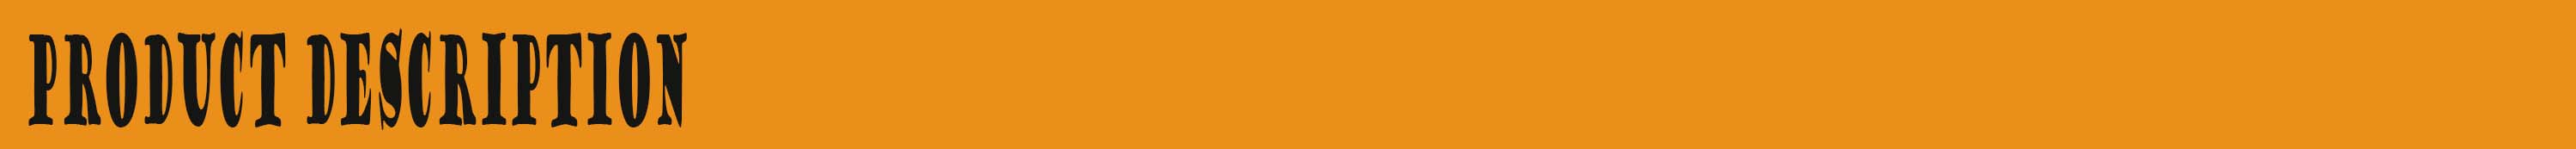 2015新しいデザイン綿100％のメンズプリントショートパンツメンズスイムショートビーチスタイルオレンジ色のファッションメンズショーツ仕入れ・メーカー・工場